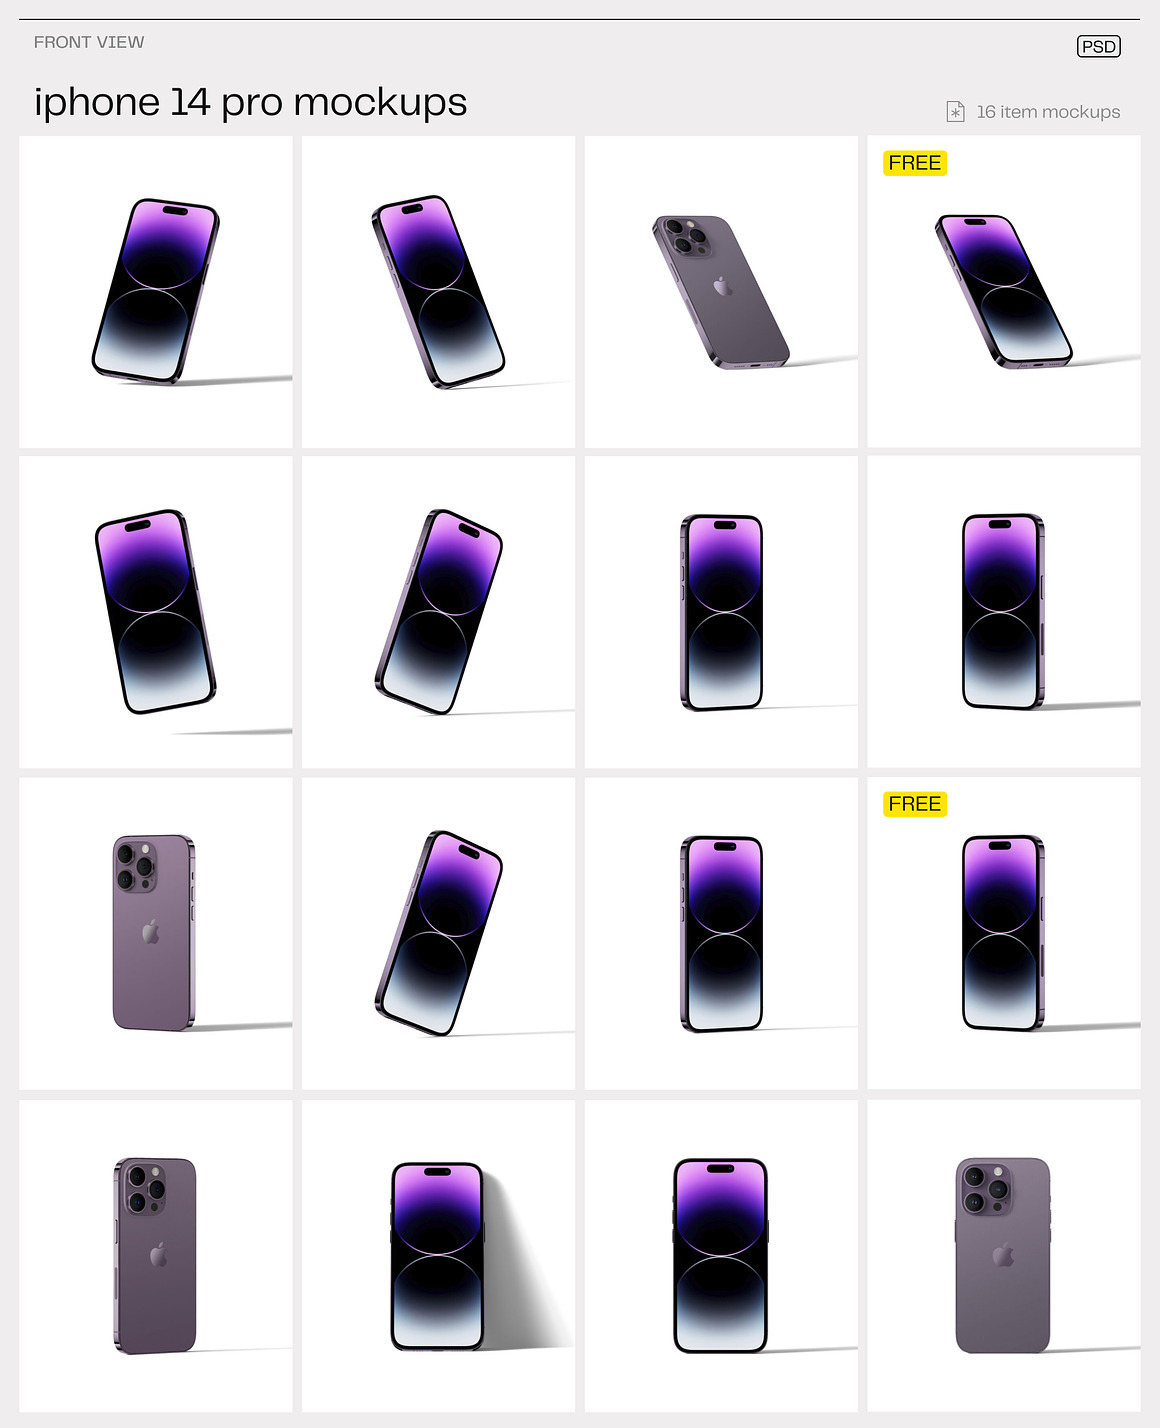 工业风极简质感高级Phone14 pro苹果手机App界面UI设计作品贴图展示PSD暗黑场景样机套装 iPhone 14 pro mockups , 第12张